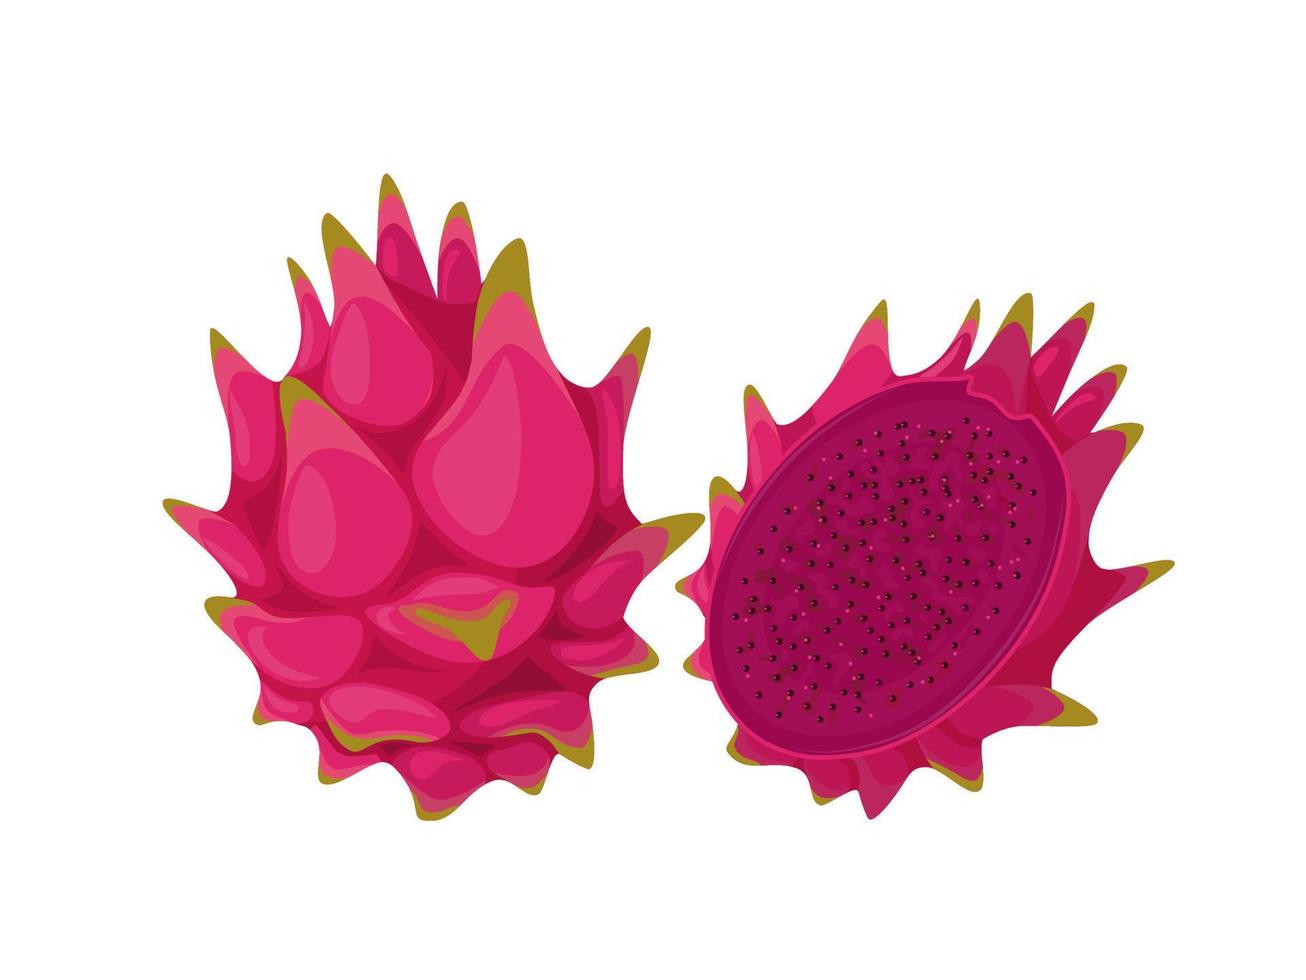 vektor illustration, mogen pitahaya frukt, känd som drake frukt, isolerat på vit bakgrund